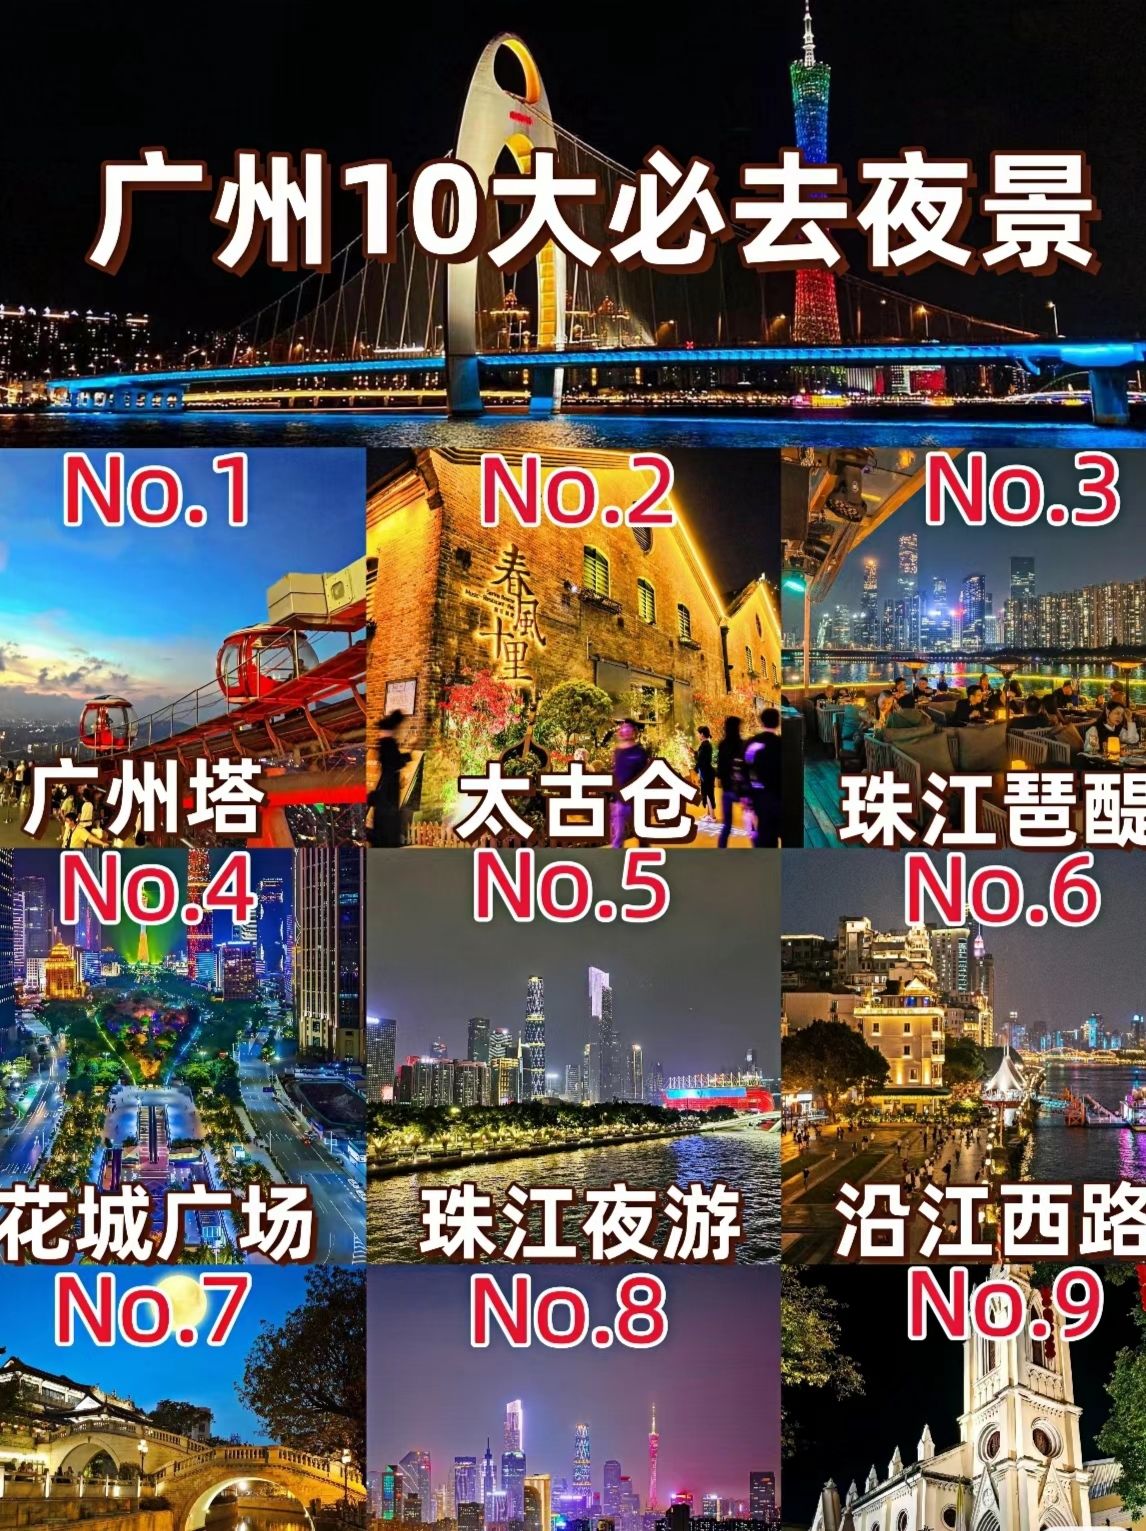 广州必打卡的十大夜景 1广州塔:广州的标志性建筑，在塔顶坐上最高的横向摩天轮，尽览广州城的繁华，36